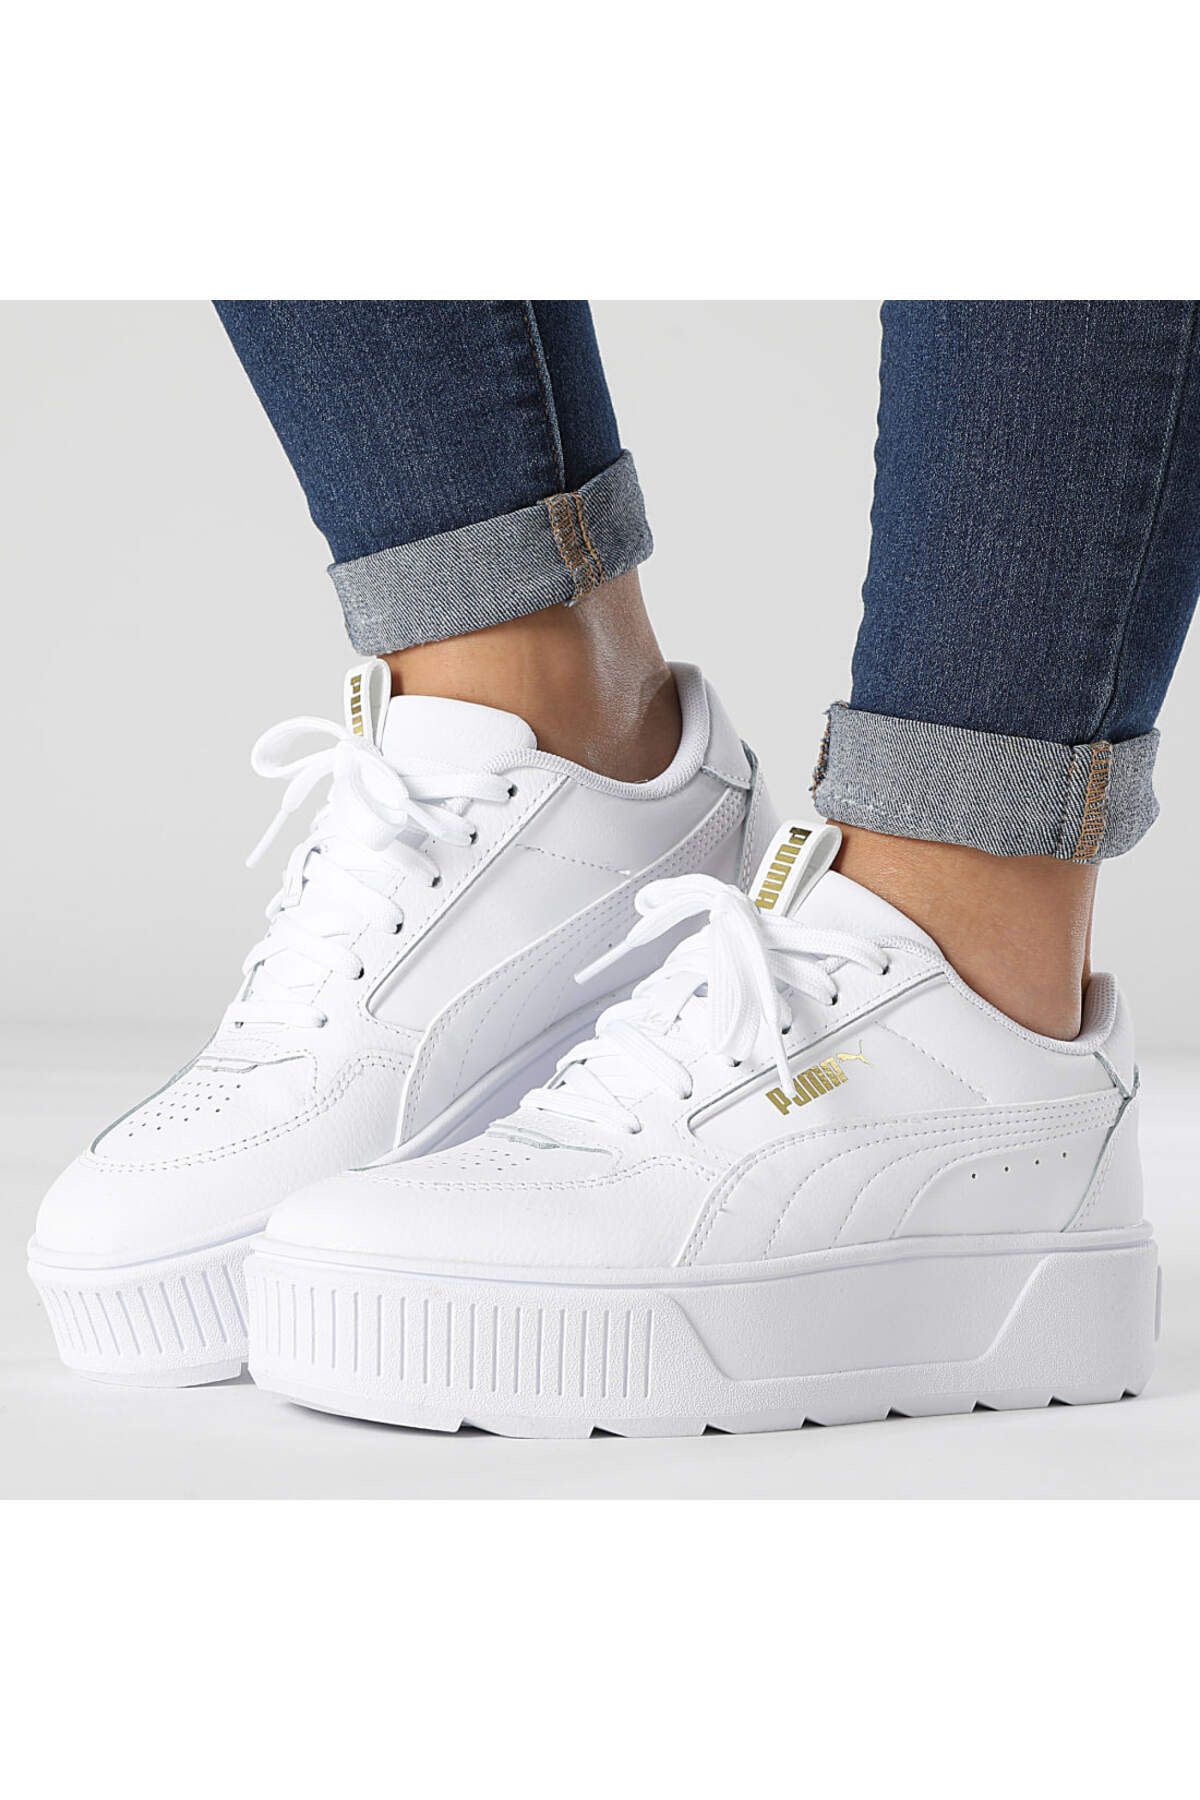 Puma Kadın Beyaz Yüksek Taban Sneaker Günlük Spor Ayakkabı